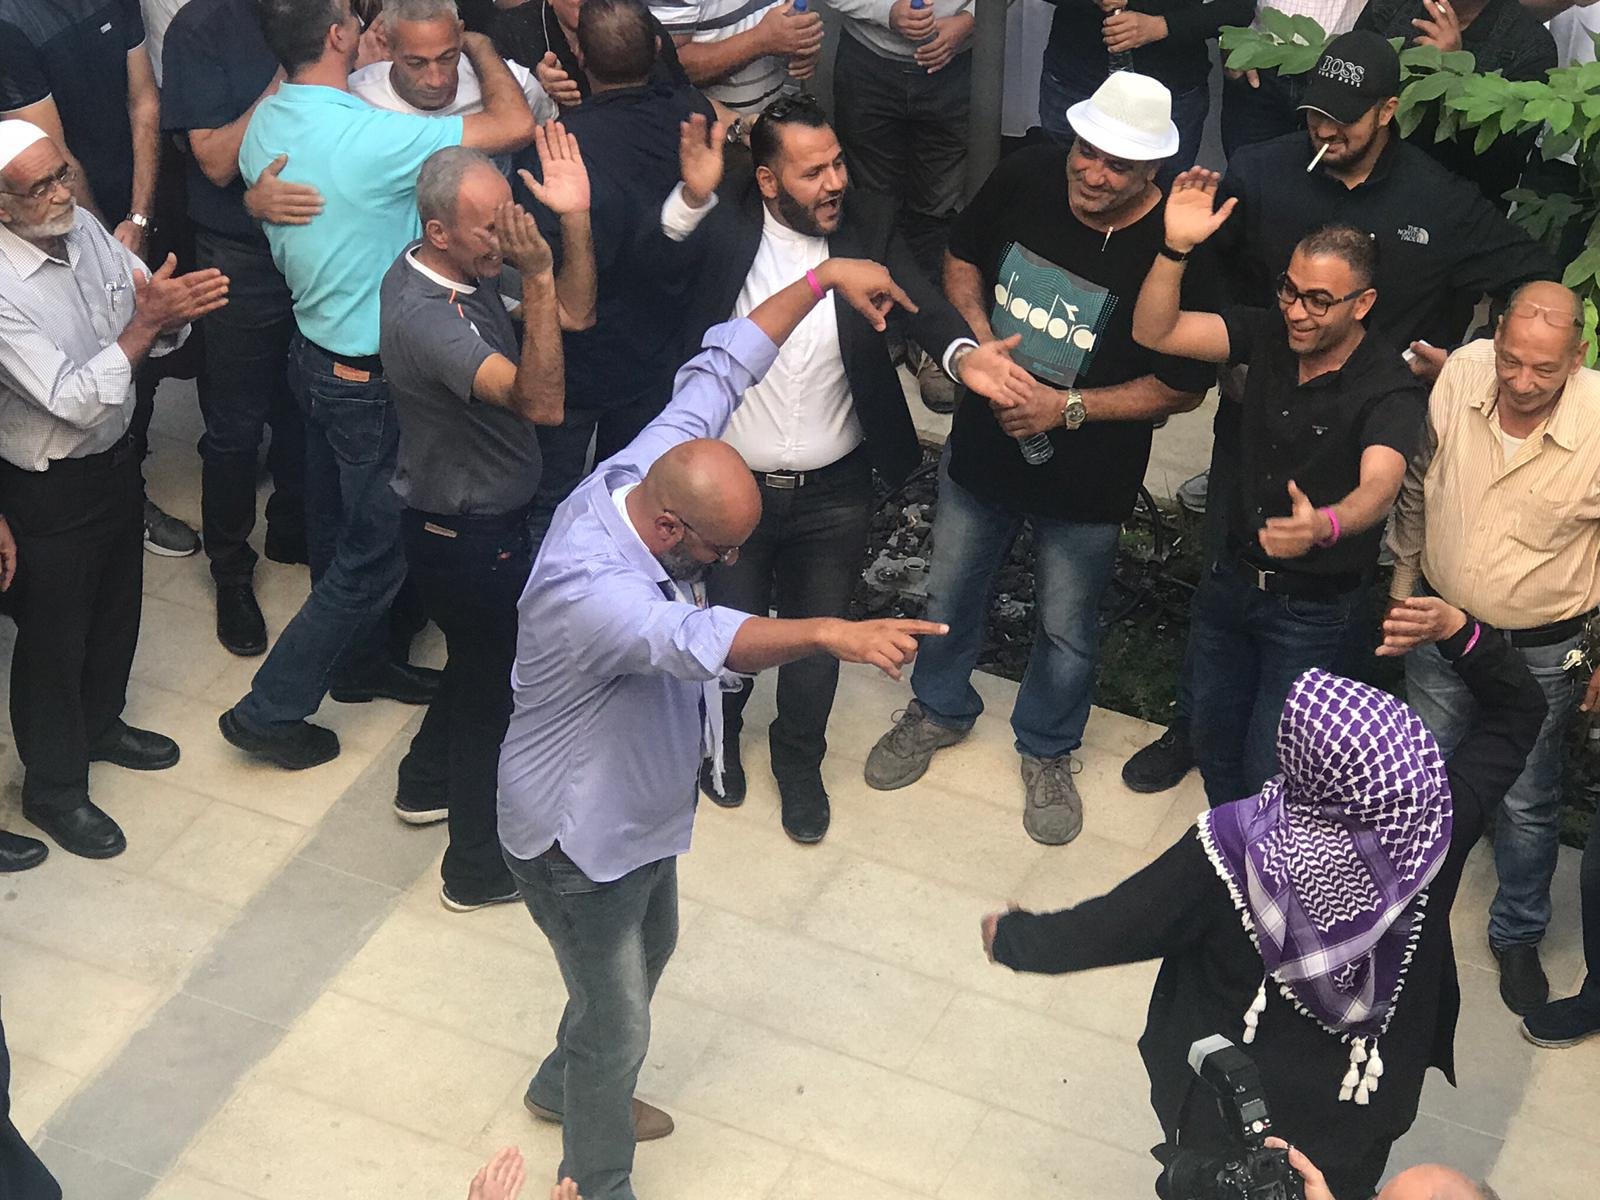 استقبال رئيس بلدية الناصرة سلام ،بالرقص والغناء اثناء دخوله الى مبنى البلدية-3